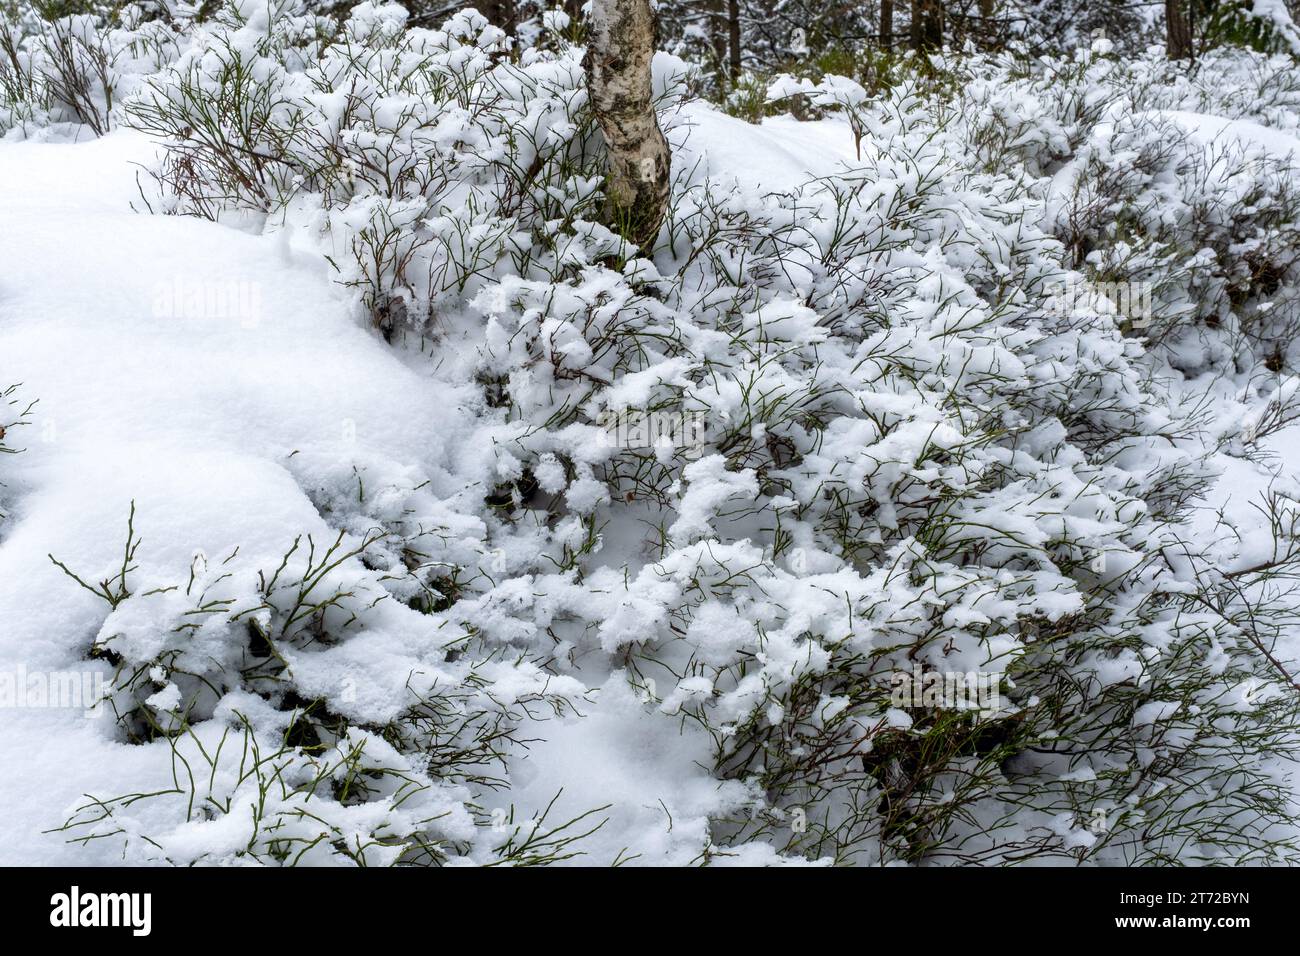 Im Winter, Blaubeersträucher unter dem Schnee, kaltes Wetter, Schnee- und frostiges Wetter, Birkenstamm in Blaubeersträuchern Stockfoto